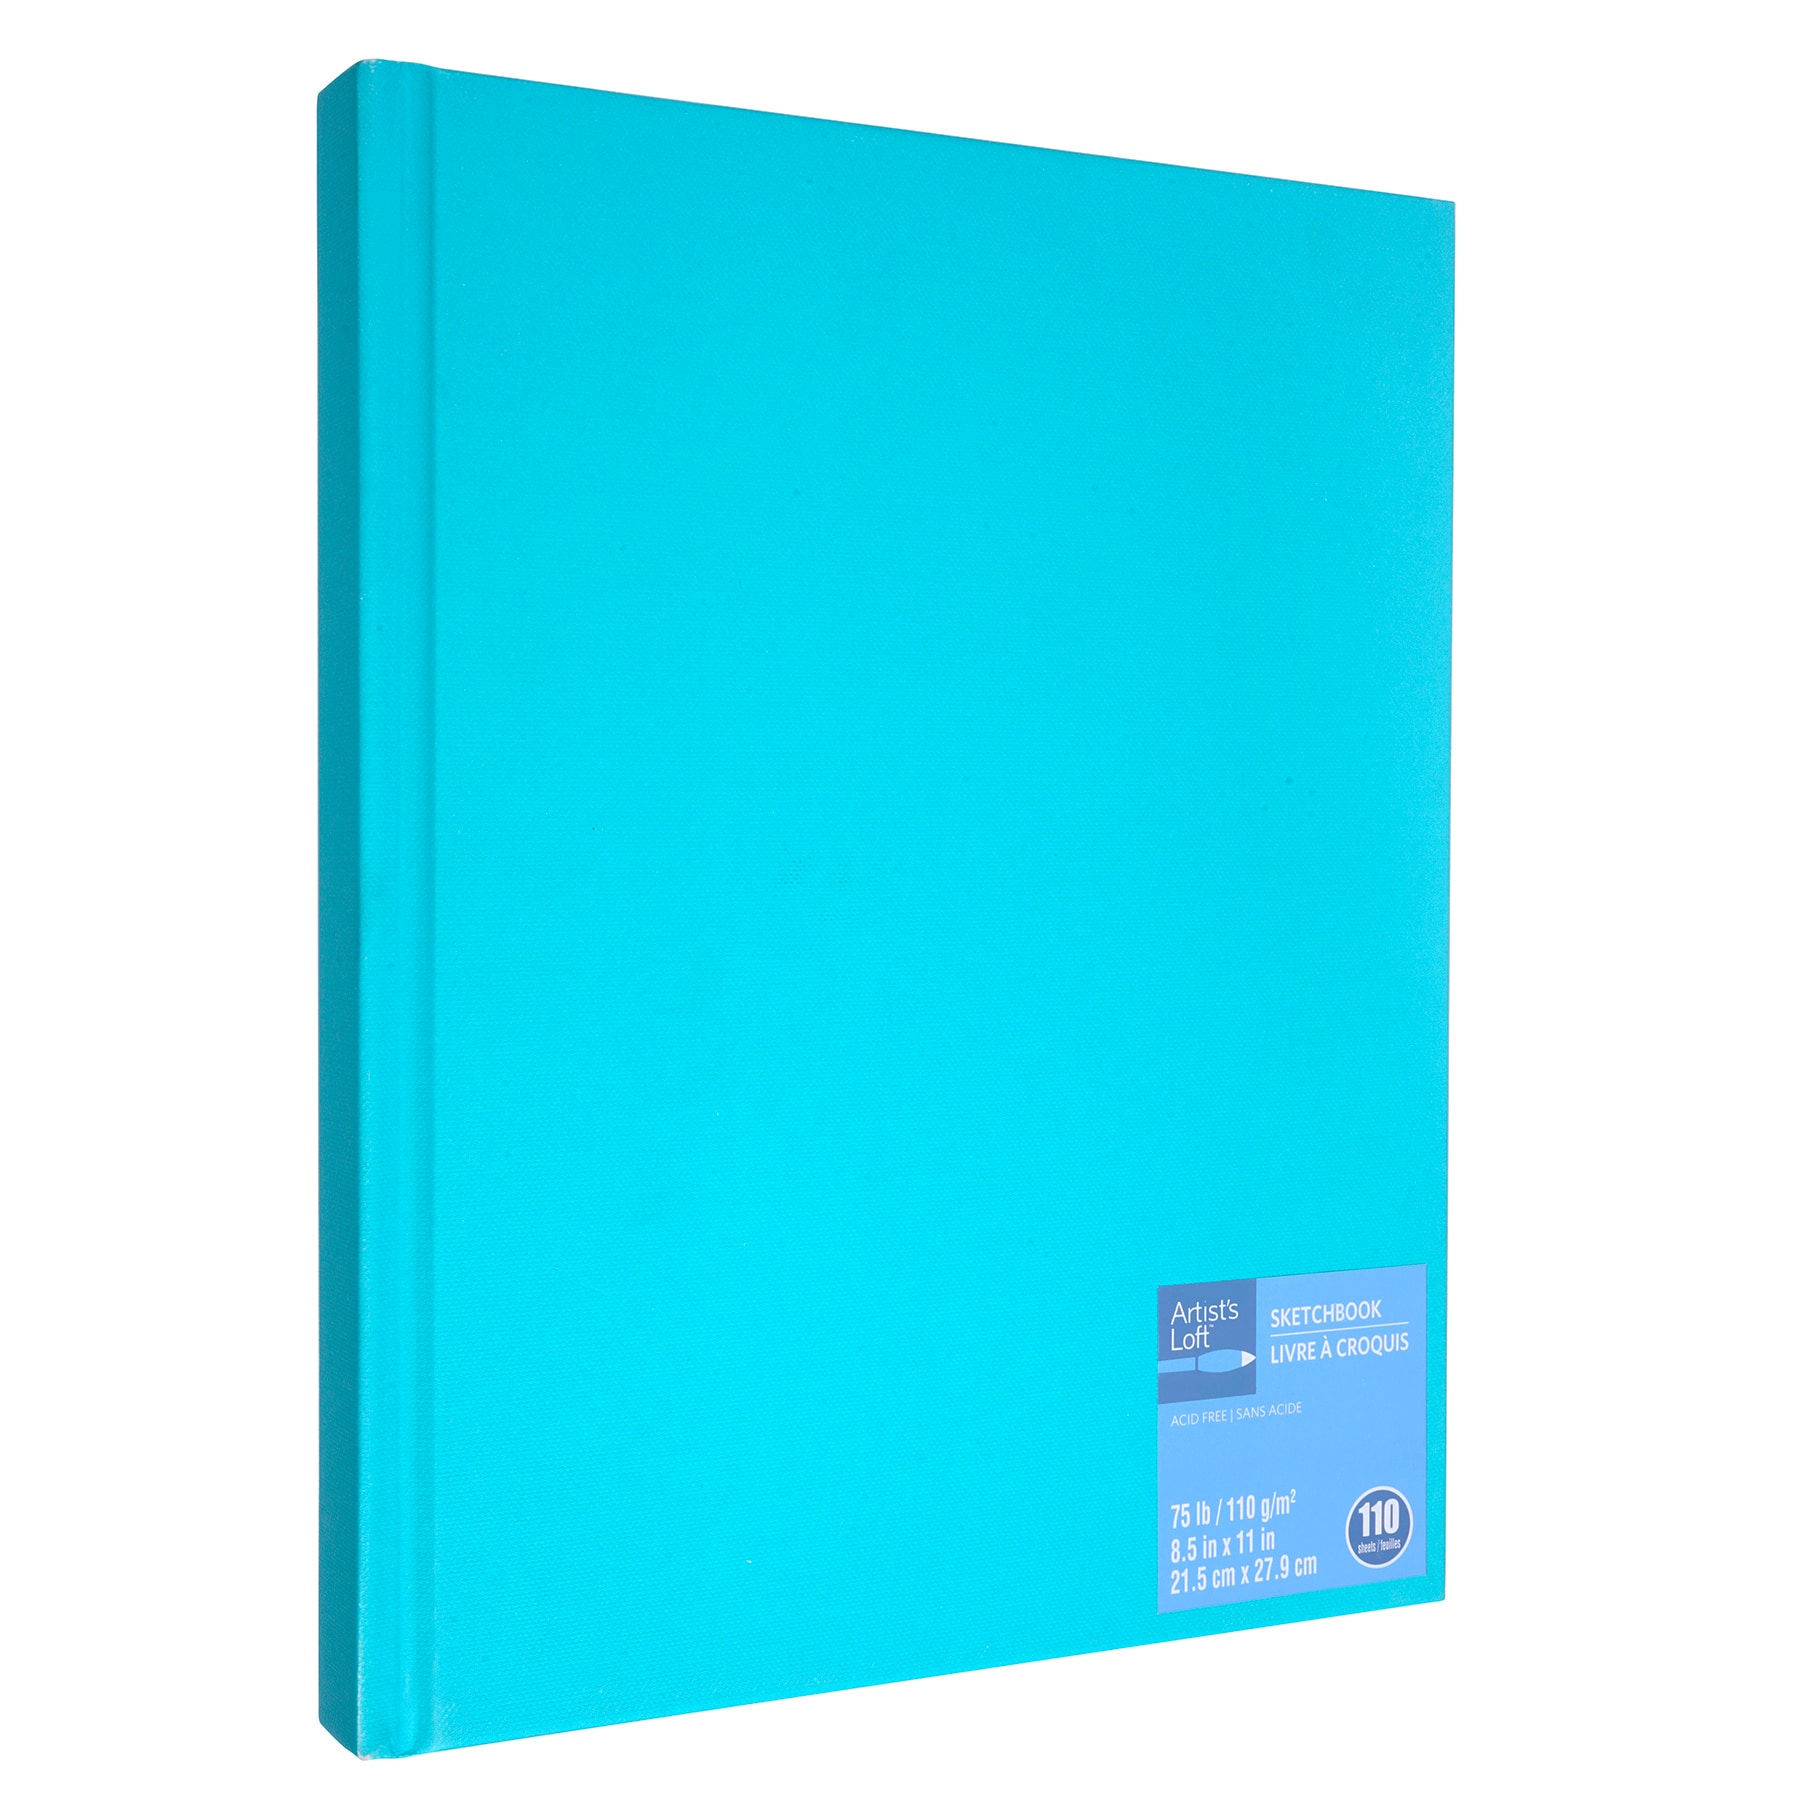  Blue Hardbound Sketchbook by Artist's Loft, 8.5 x 11 (21.5cm  x 27.9cm) : Arts, Crafts & Sewing